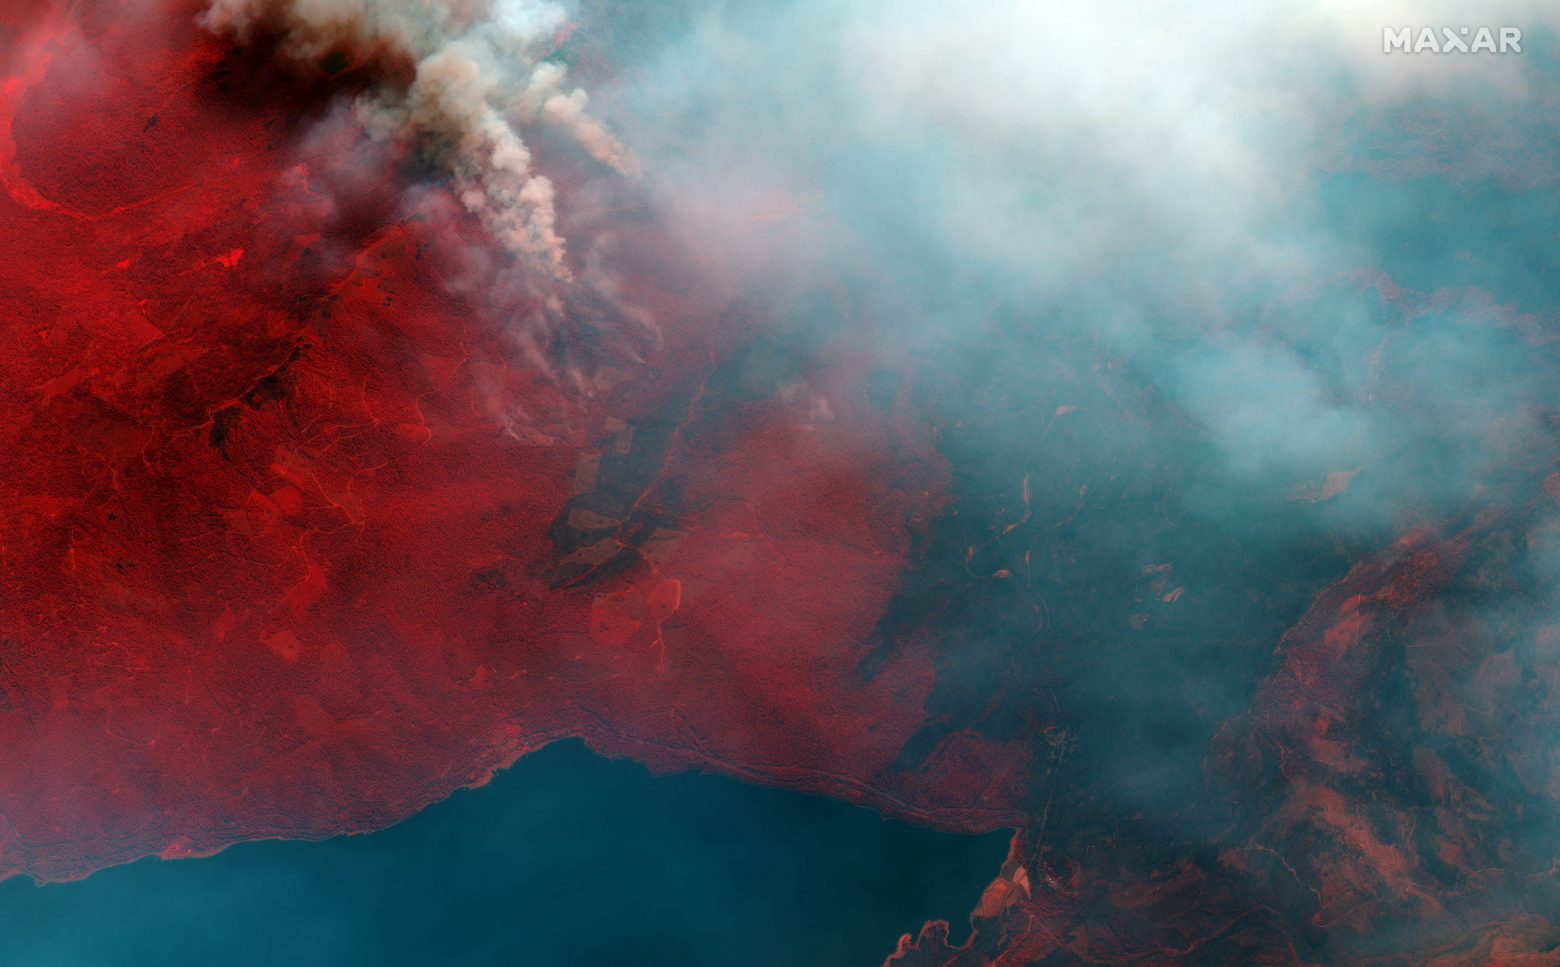 Incendi – Prima linea di incendi incontrollati negli Stati Uniti, Perù, Bolivia, Turchia e Italia – Notizie – notizie